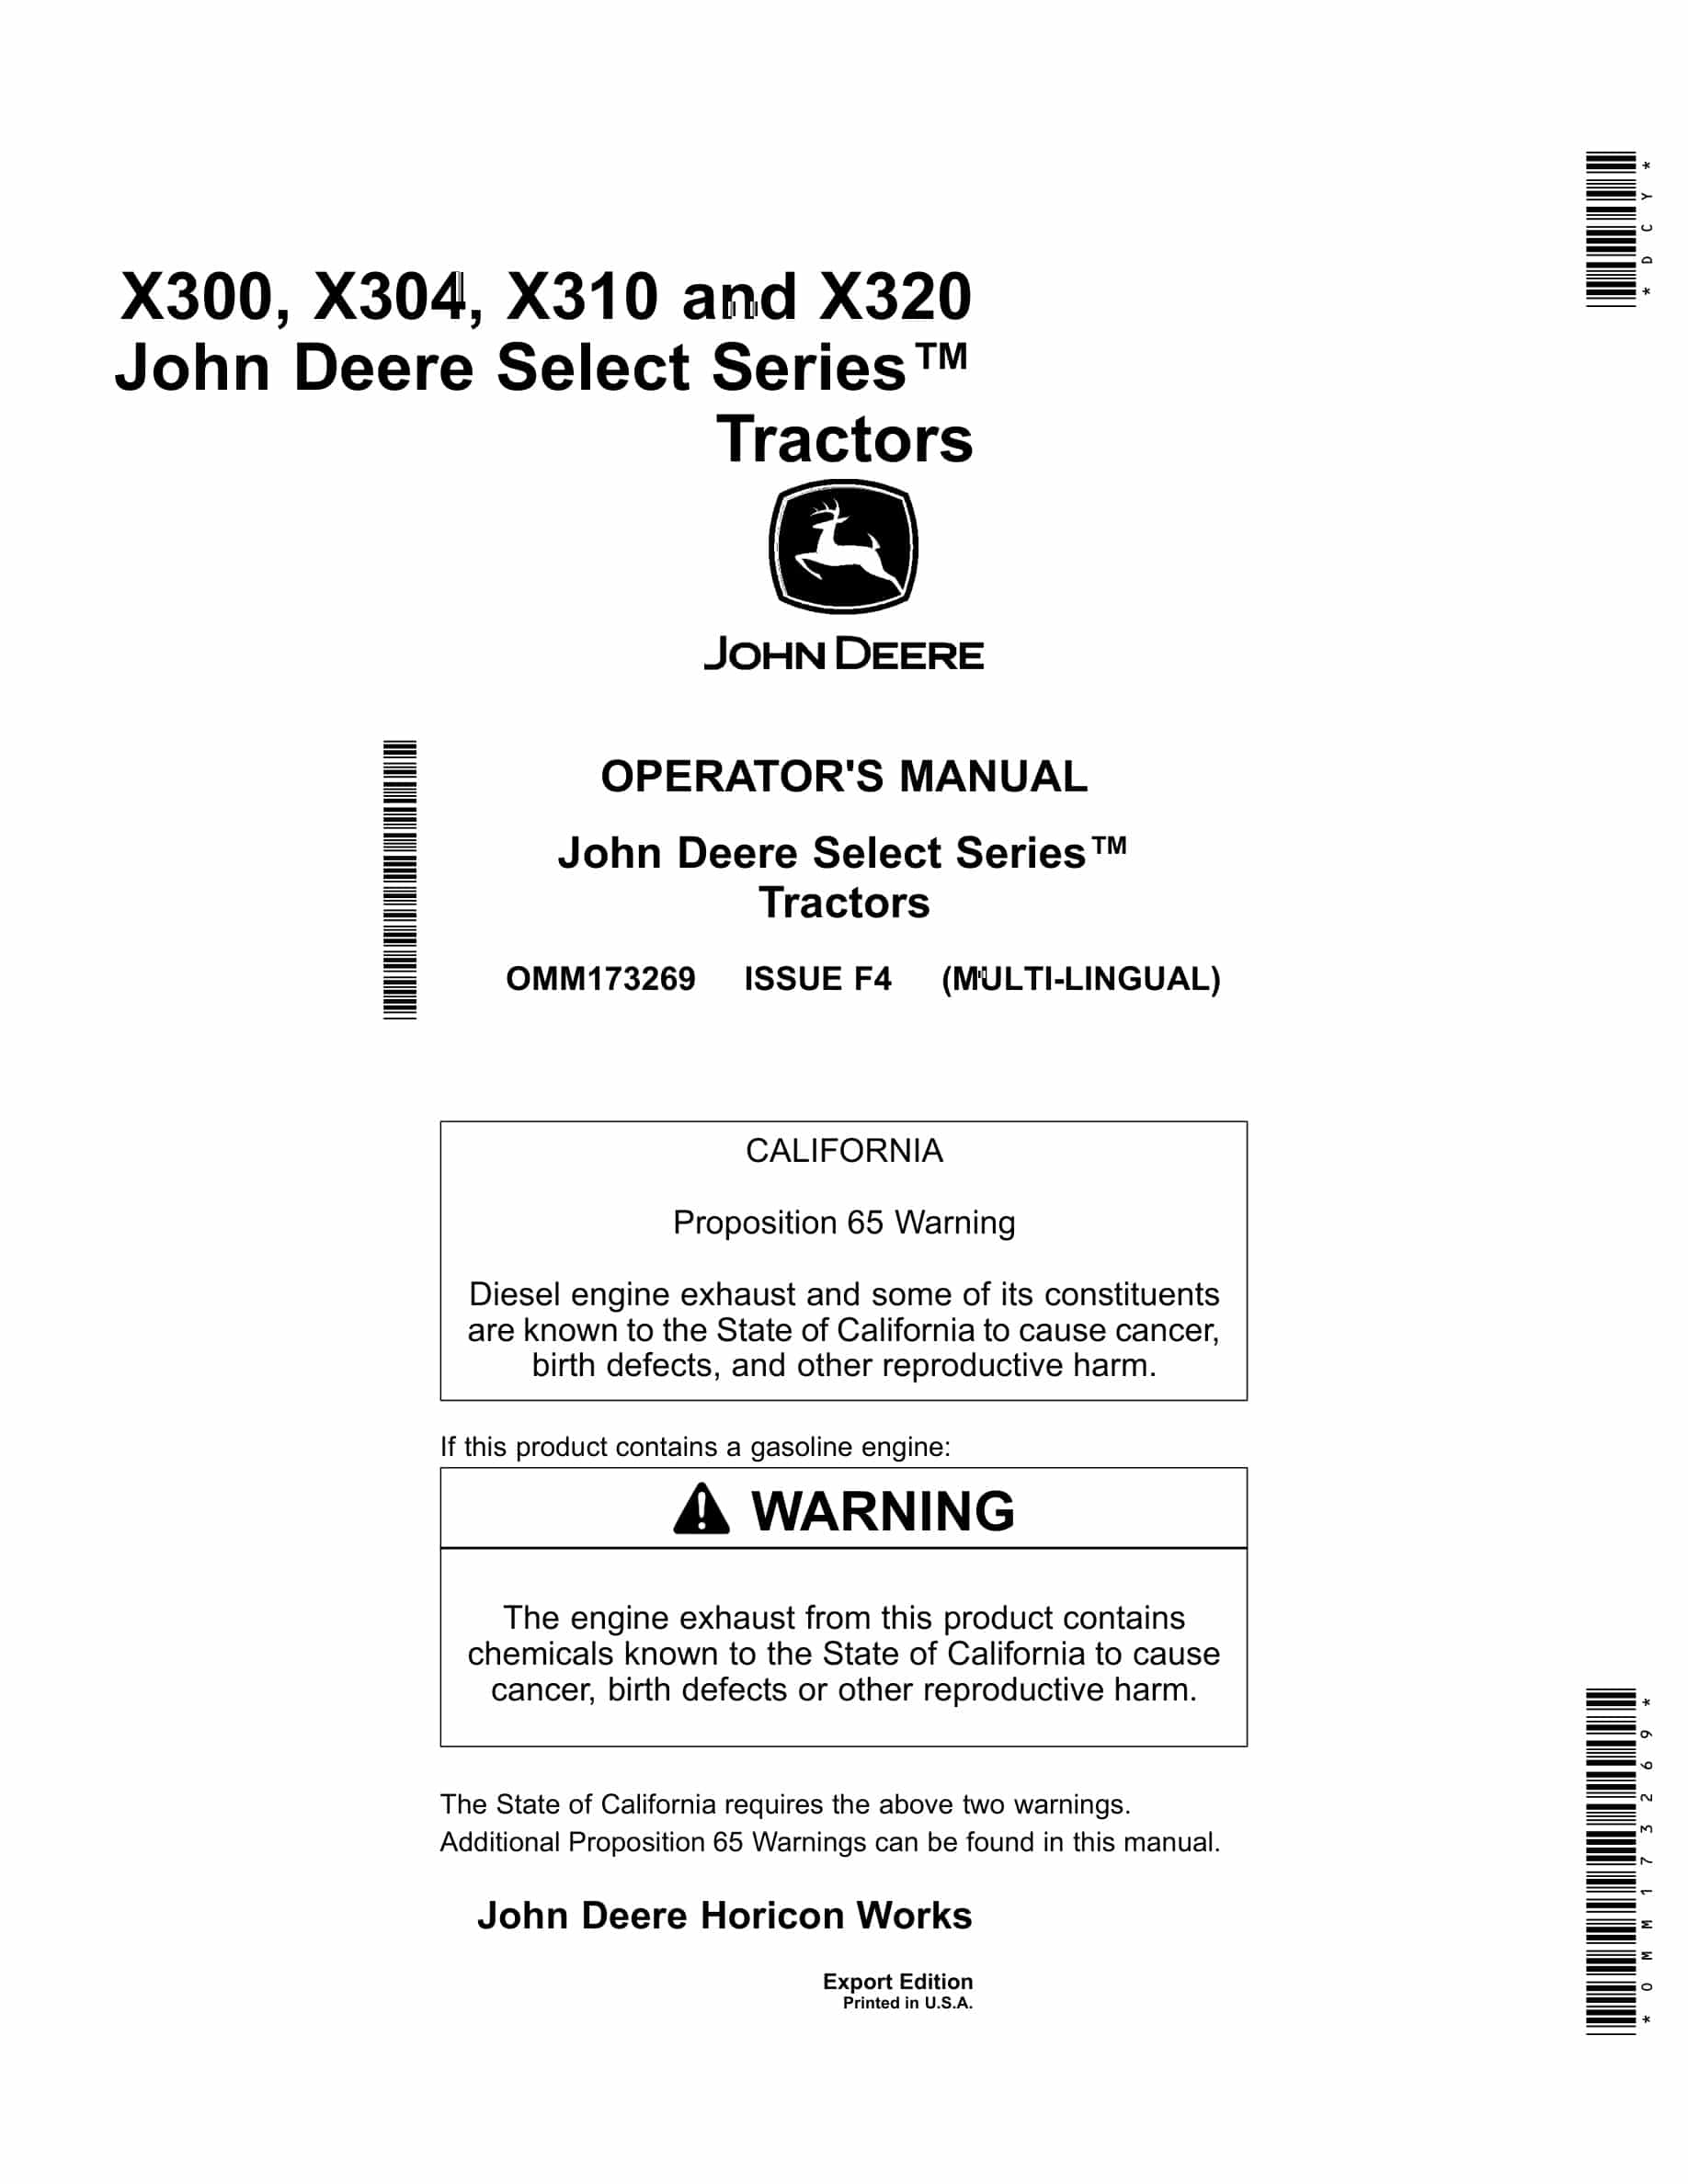 John Deere X300, X304, X310 And X320 Tractors Operator Manuals OMM173269-1